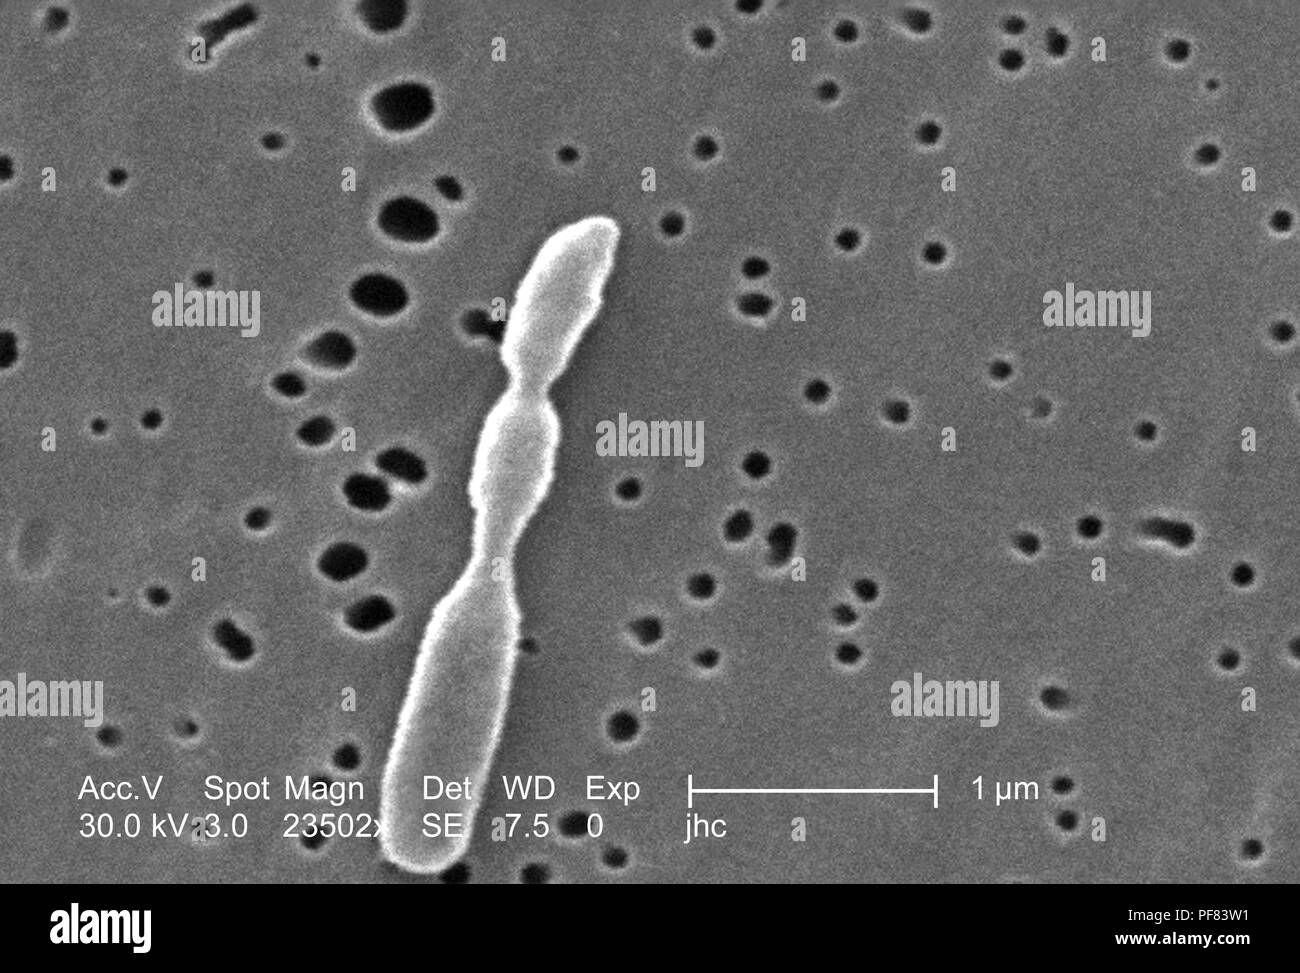 Fortemente ingrandita di un Ralstonia mannitolilytica batterio ha rivelato nel 23502x scansione ingrandita al microscopio elettronico (SEM) immagine, 2006. Immagine cortesia di centri per il controllo delle malattie (CDC) / Judith Noble-Wang, Ph.D. () Foto Stock